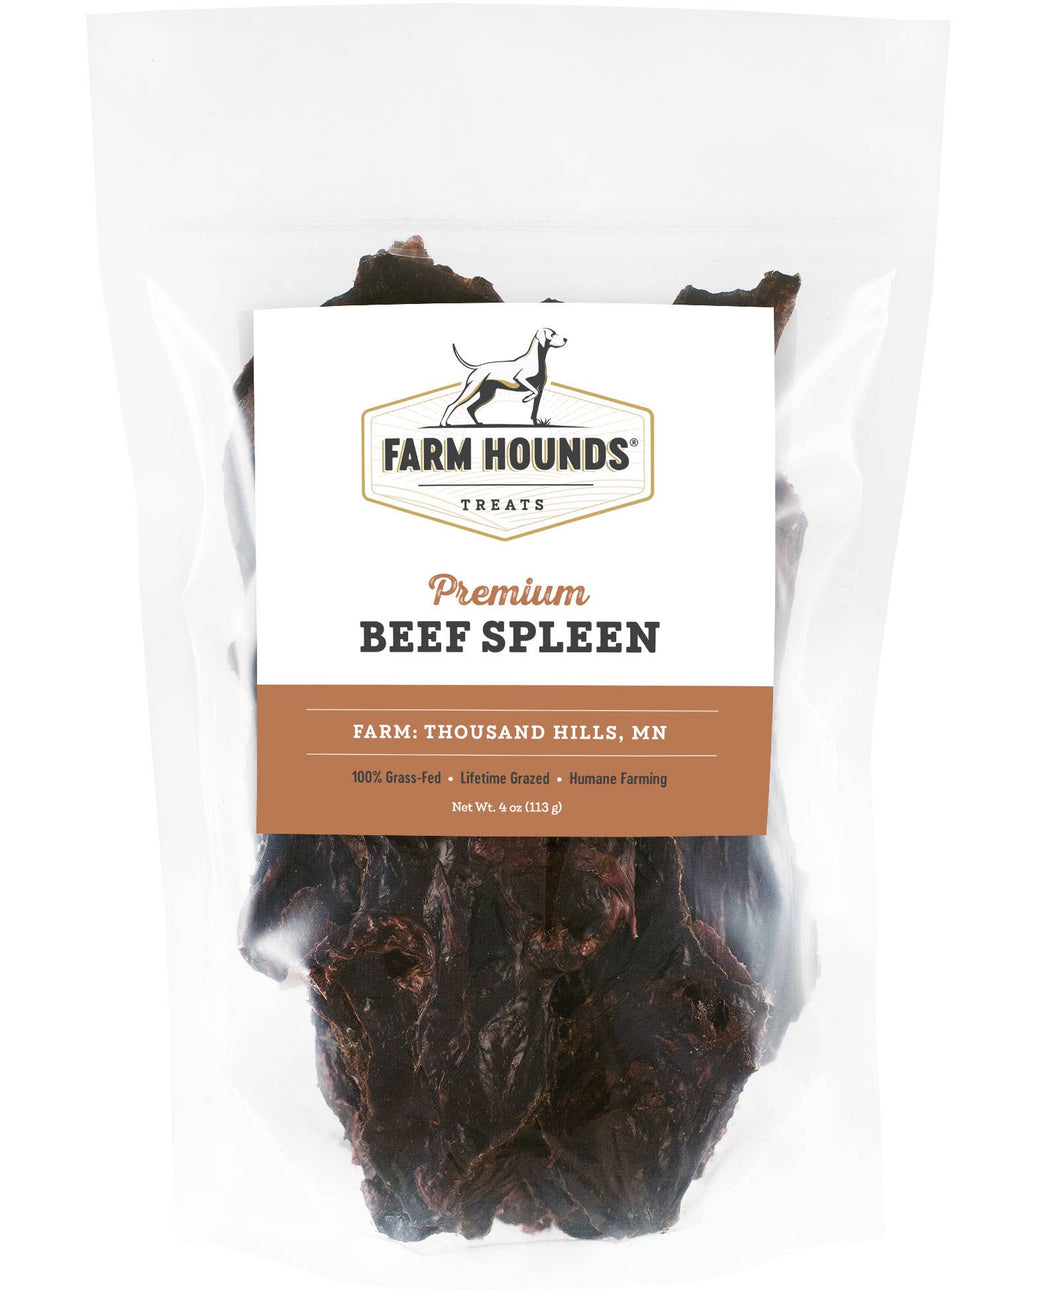 Farm Hounds - Beef Spleen